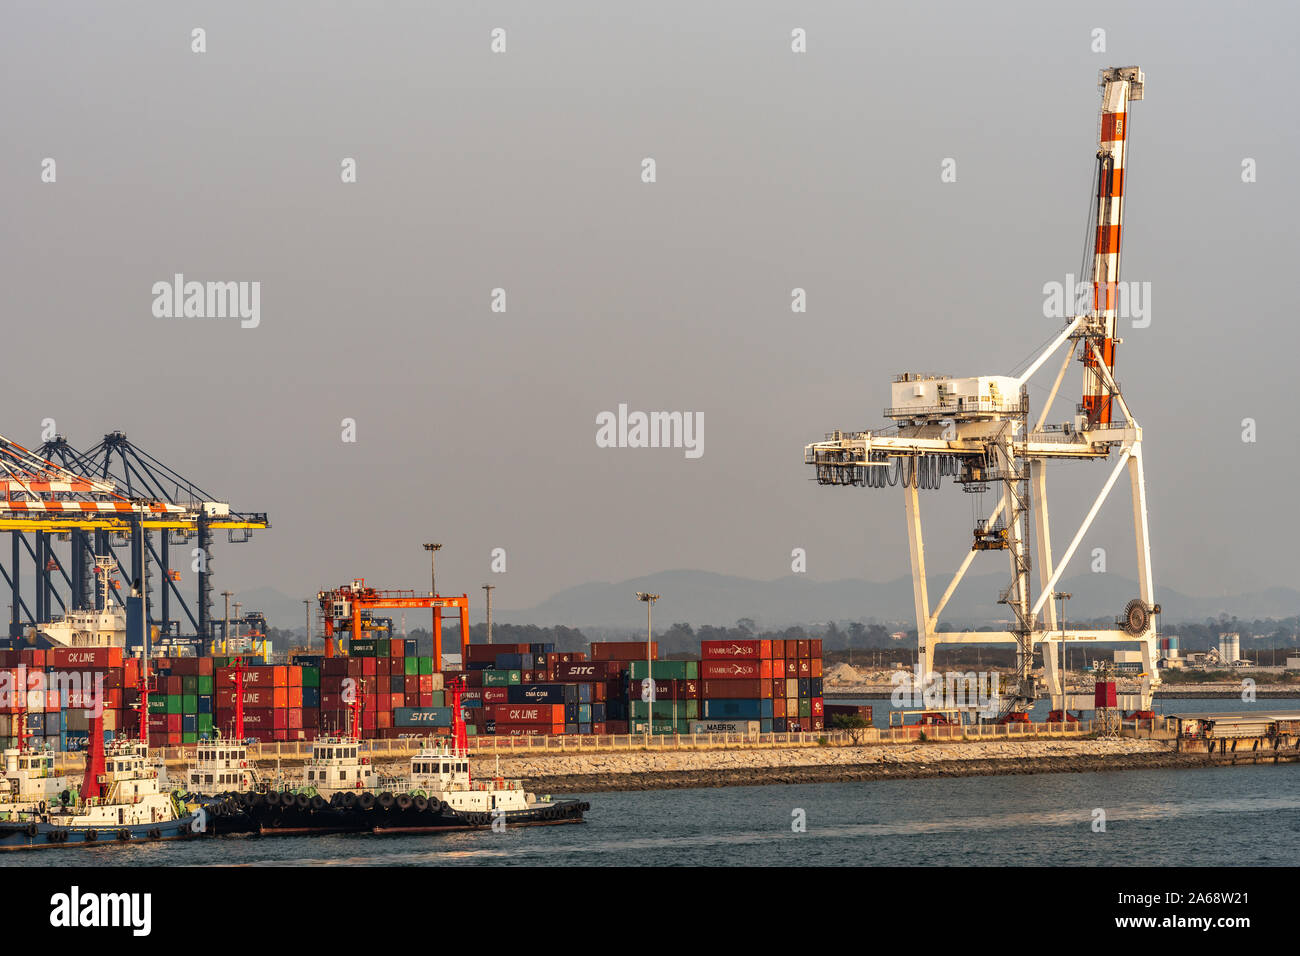 Port de Laem Chabang, Thaïlande - Mars 17, 2019 : grand récipient rouge et blanc crane au repos sur le quai rempli de piles de boîtes colorées. Peu de remorqueur Banque D'Images